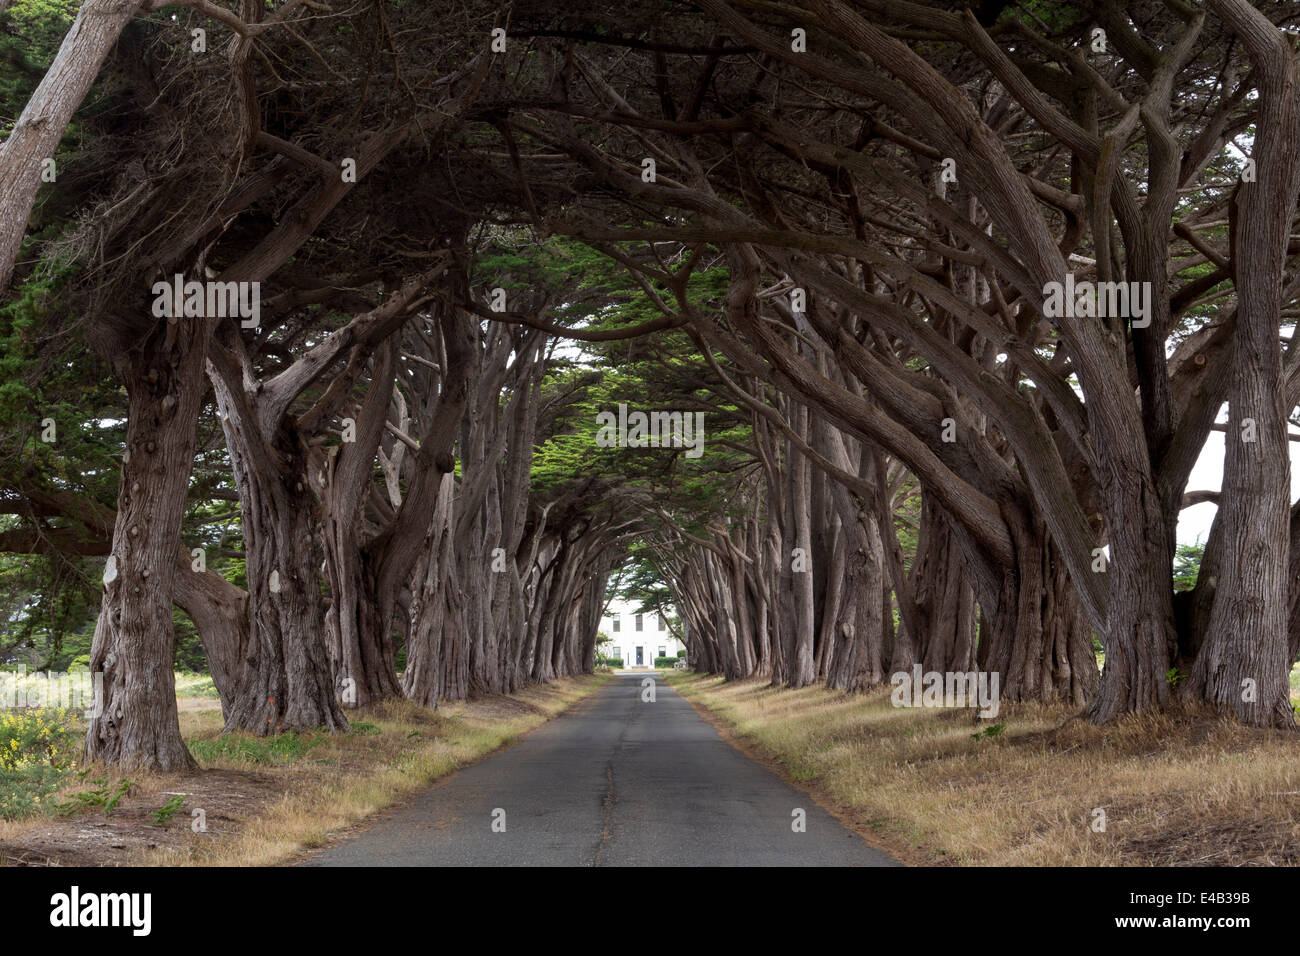 Monterey-Zypresse, Monterey-Zypresse Bäume, Baum, Bäume, Auffahrt, Point Reyes National Seashore, Kalifornien, USA, Nordamerika Stockfoto